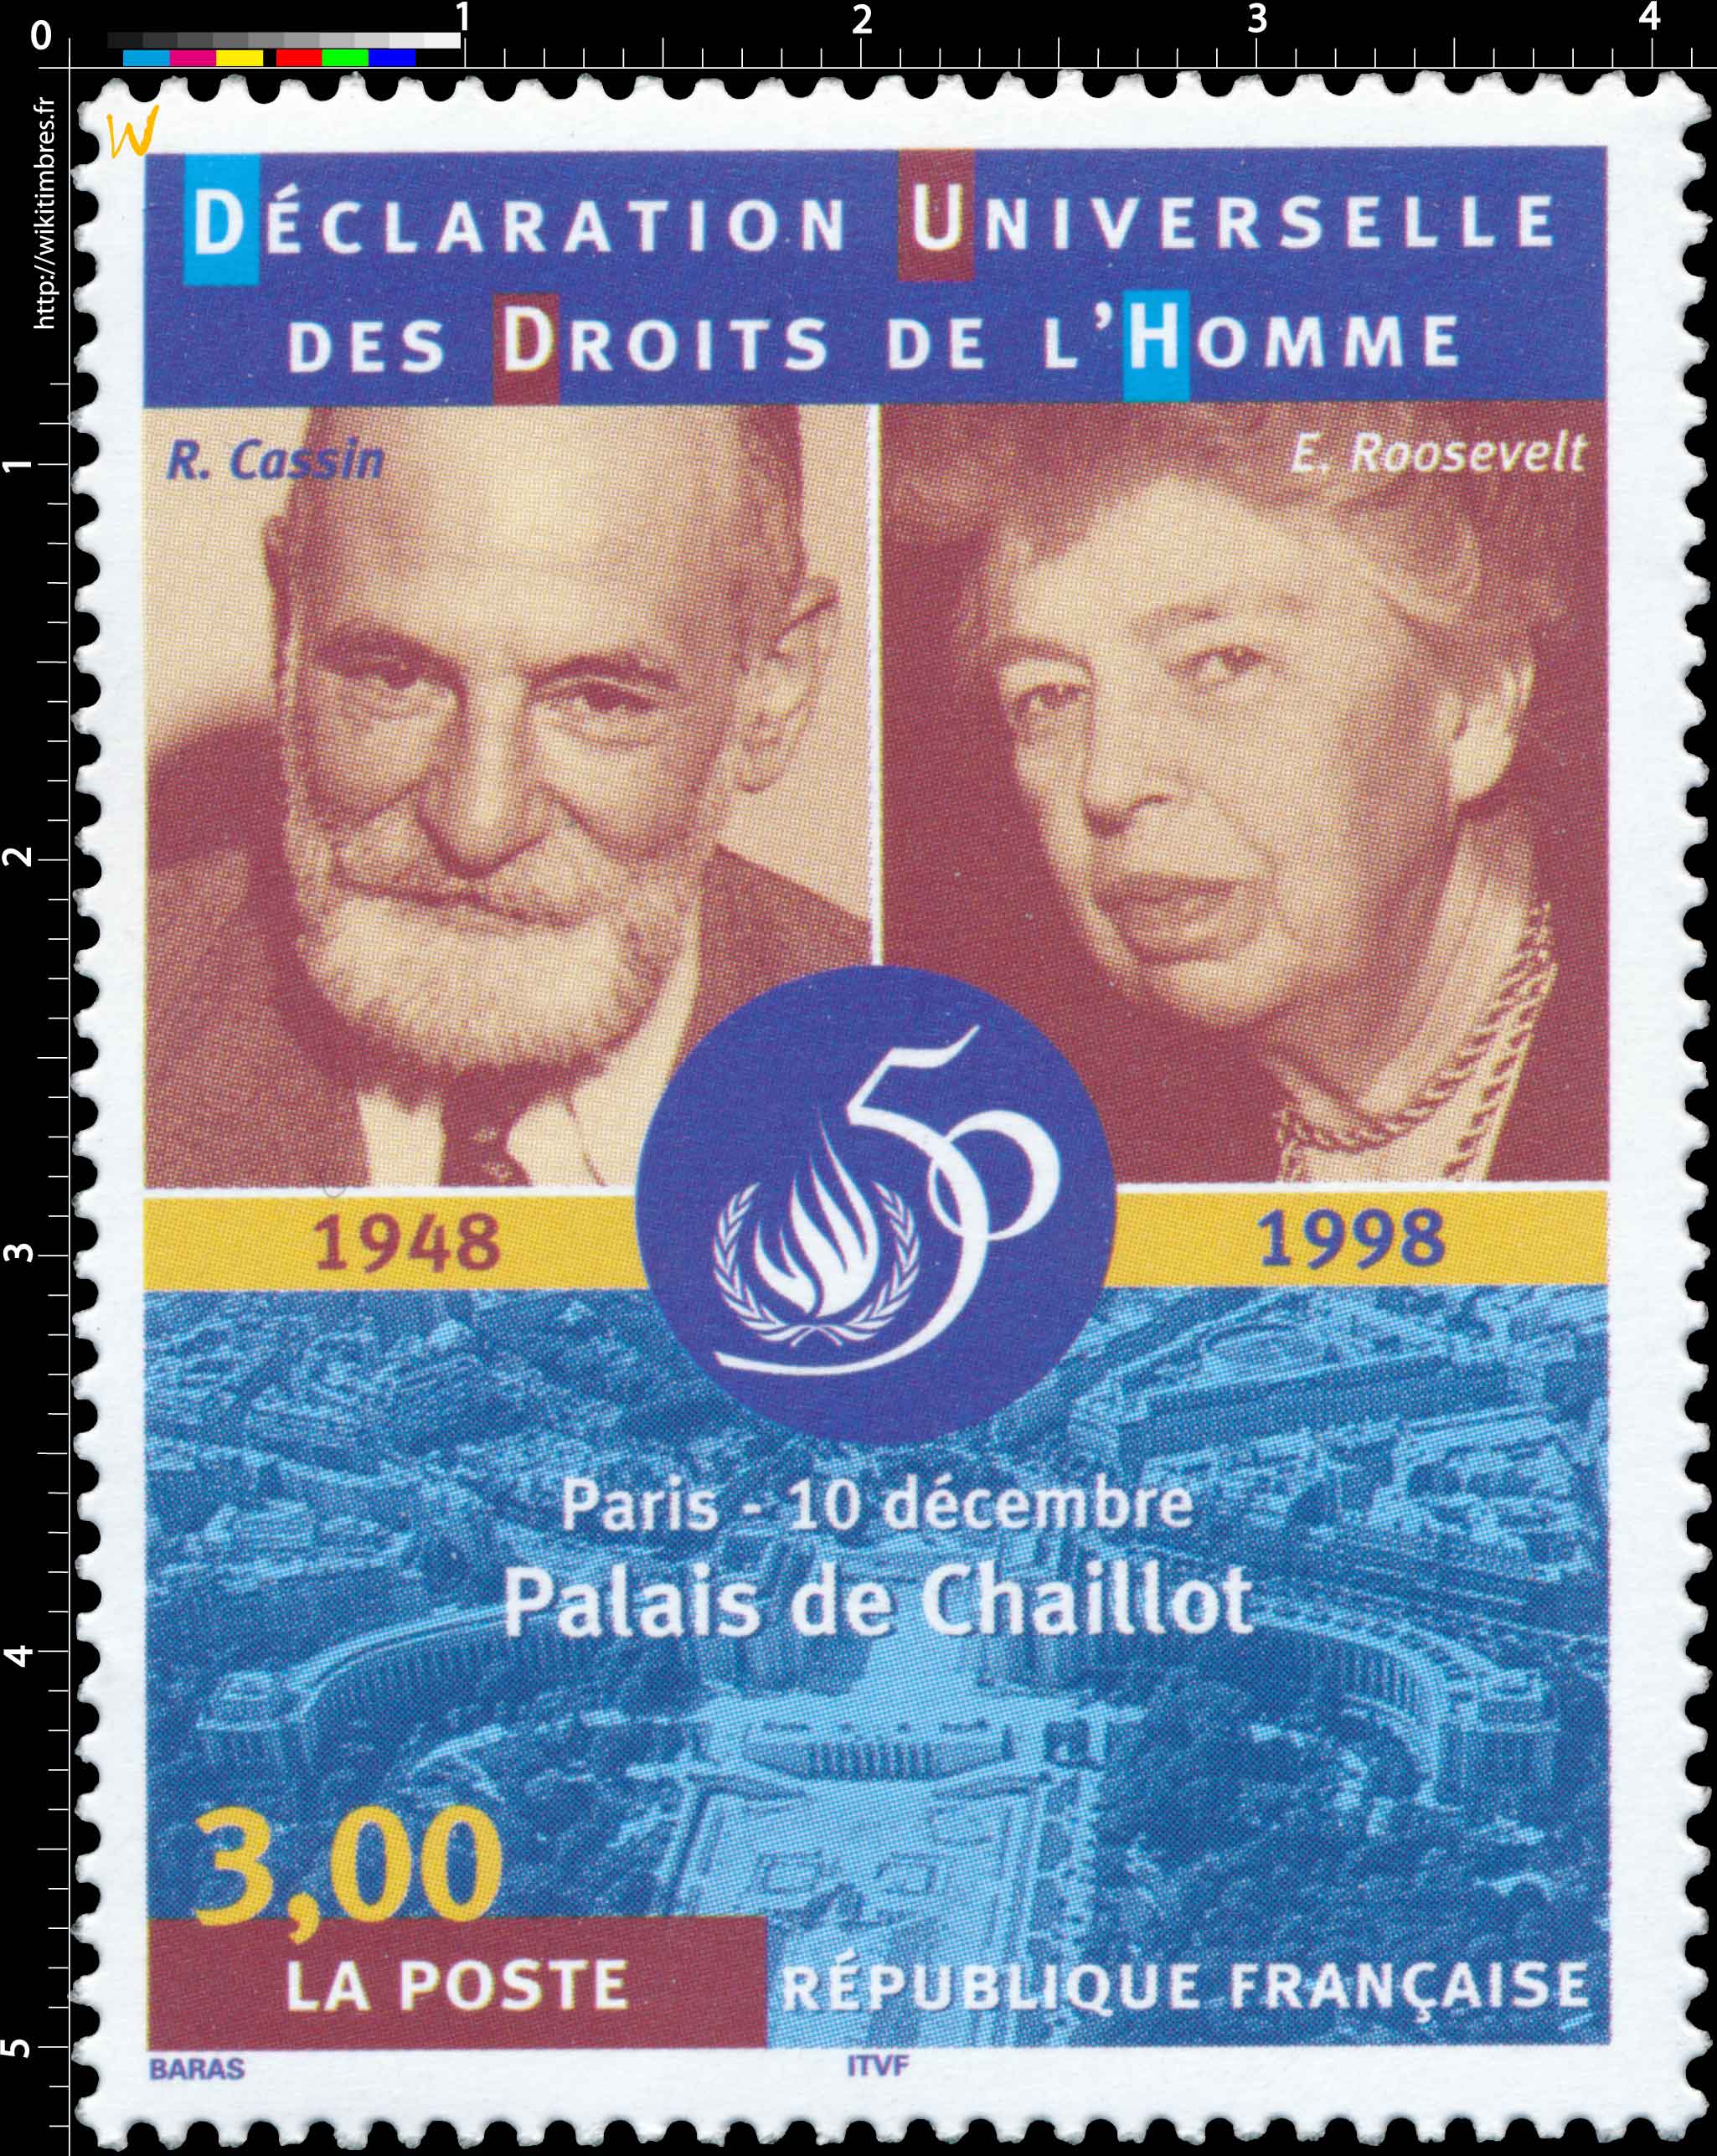 DÉCLARATION UNIVERSELLE DES DROITS DE L'HOMME 1848-1998 R. Cassin E. Roosevelt Paris - 10 décembre Palais de Chaillot